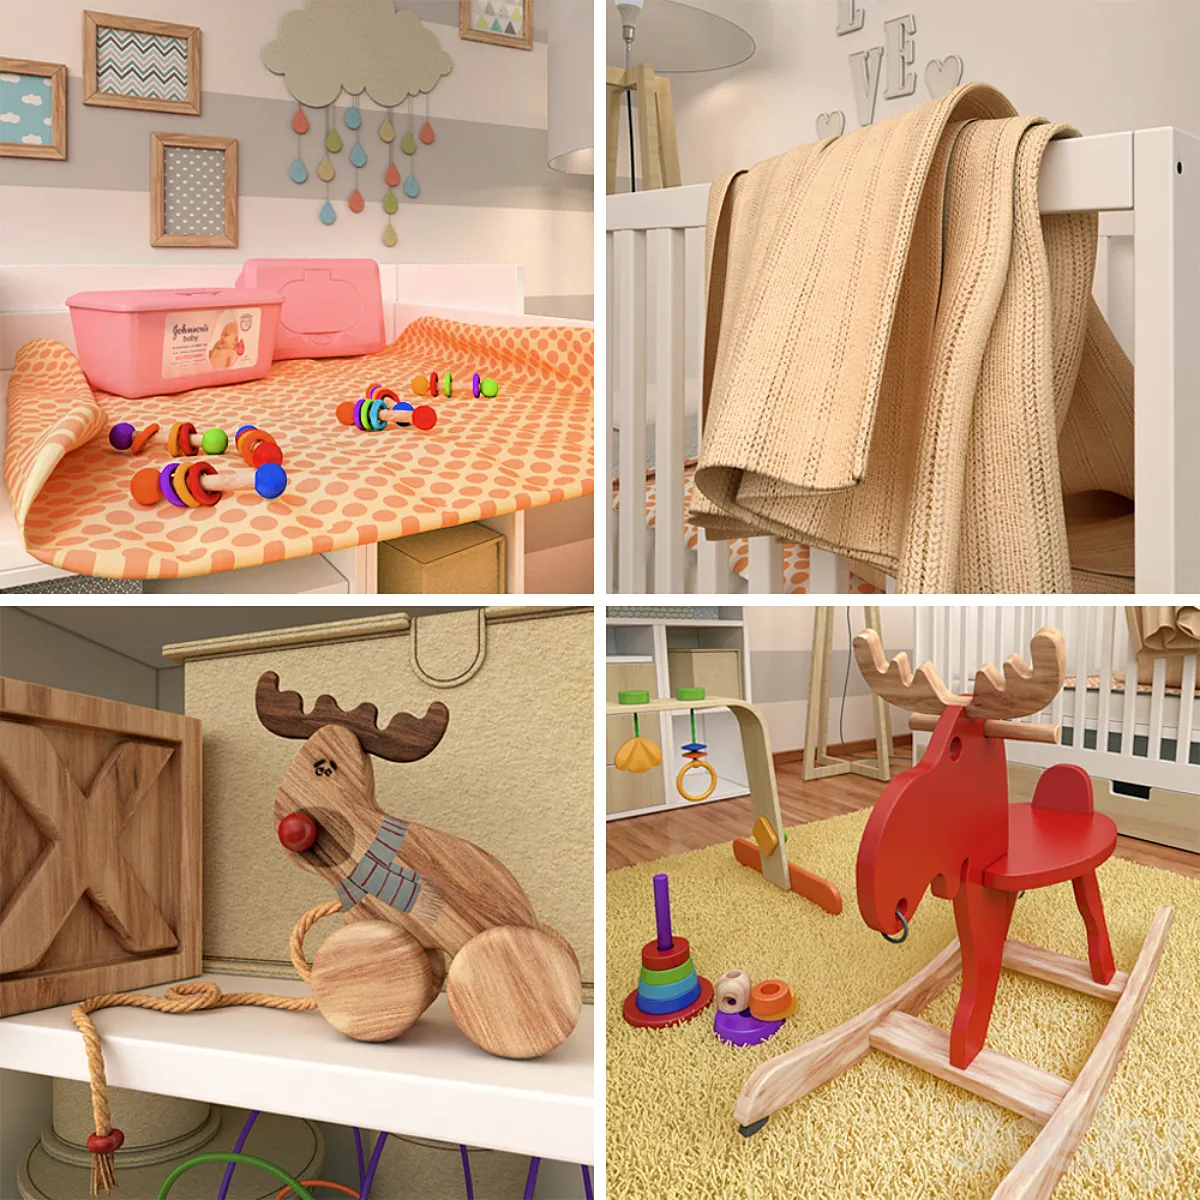 مدل سه بعدی مبلمان اتاق کودک مدرن 2 - 4